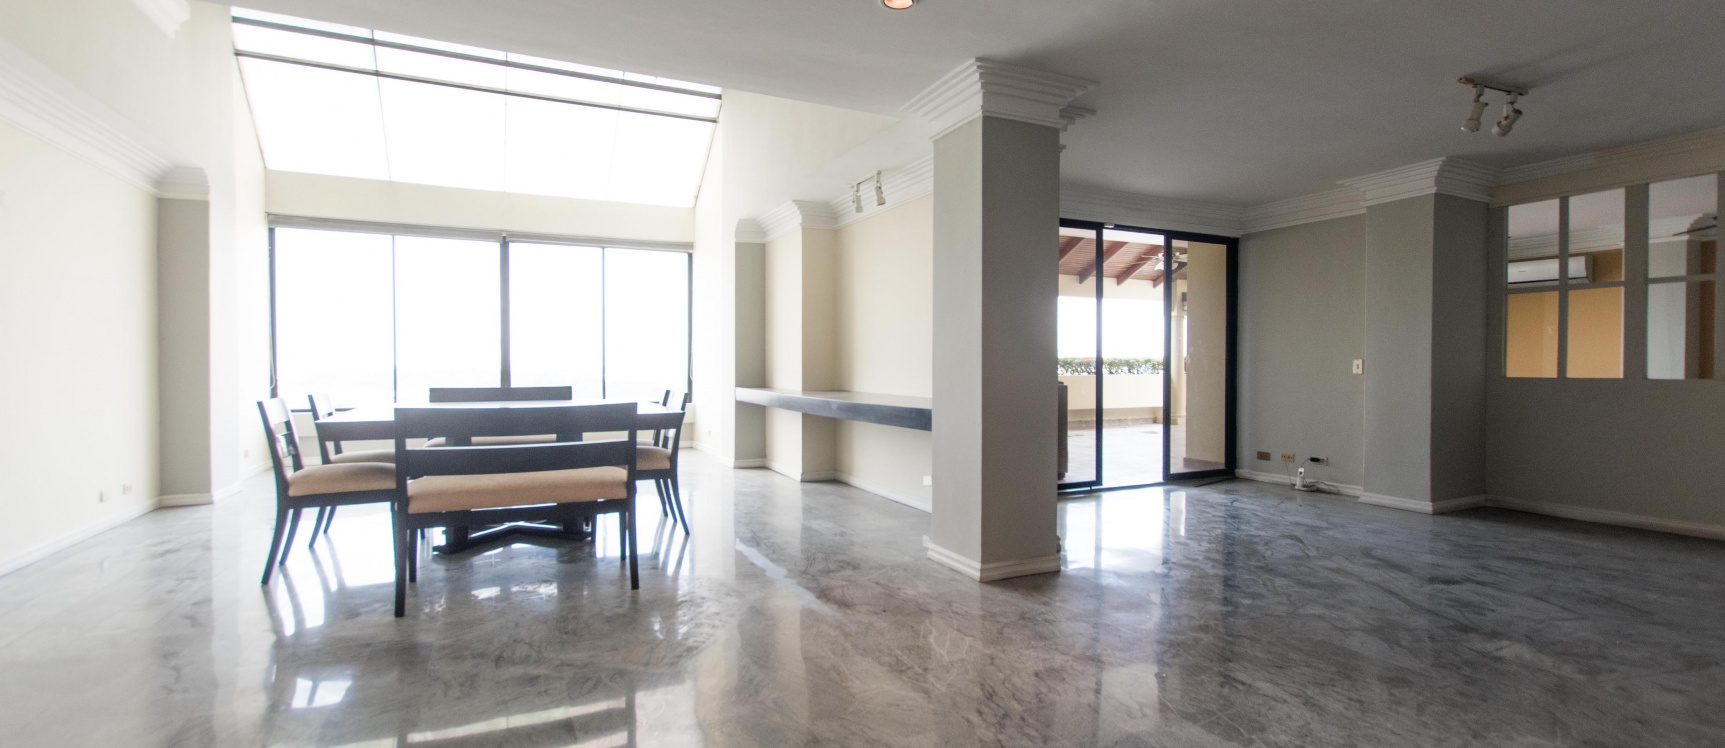 GeoBienes - Exclusivo departamento de 2 pisos Edificio Marcus, Lomas de Urdesa - Plusvalia Guayaquil Casas de venta y alquiler Inmobiliaria Ecuador